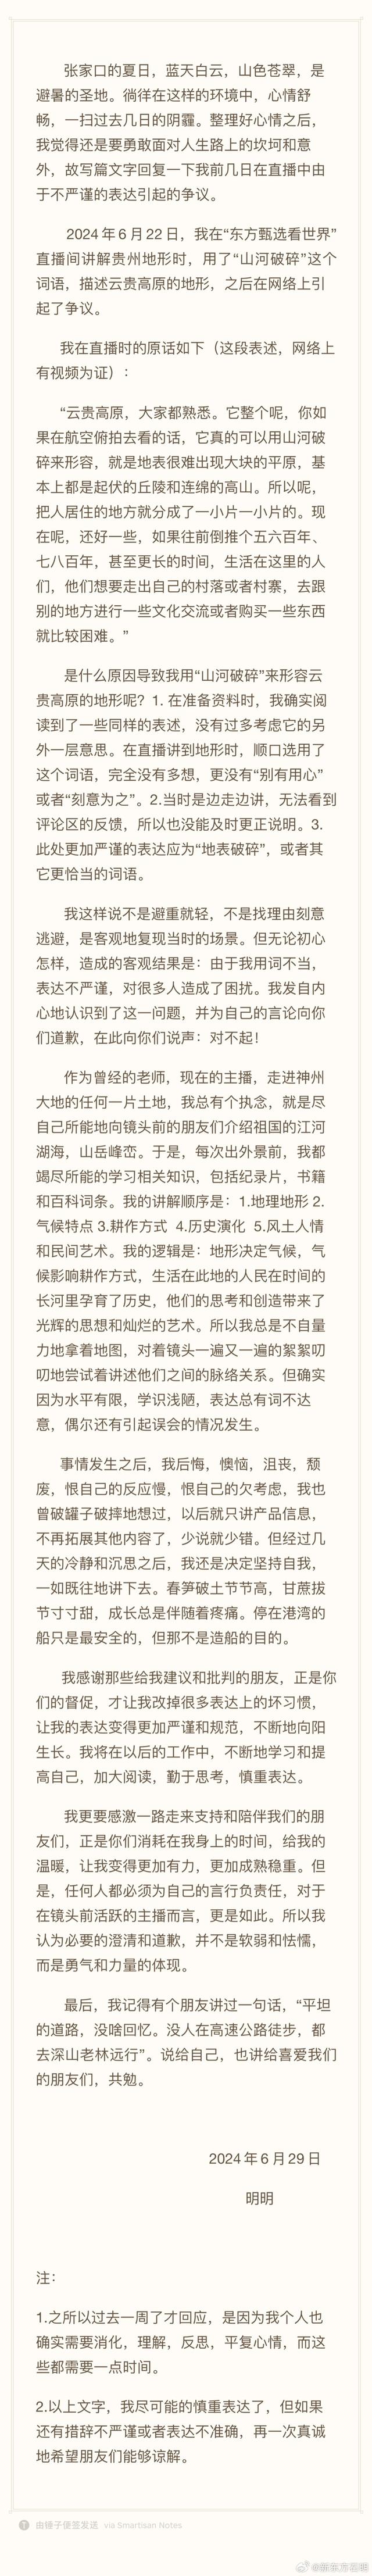 东方甄选主播石明回应“山河破碎”事件，主播为言行不当道歉